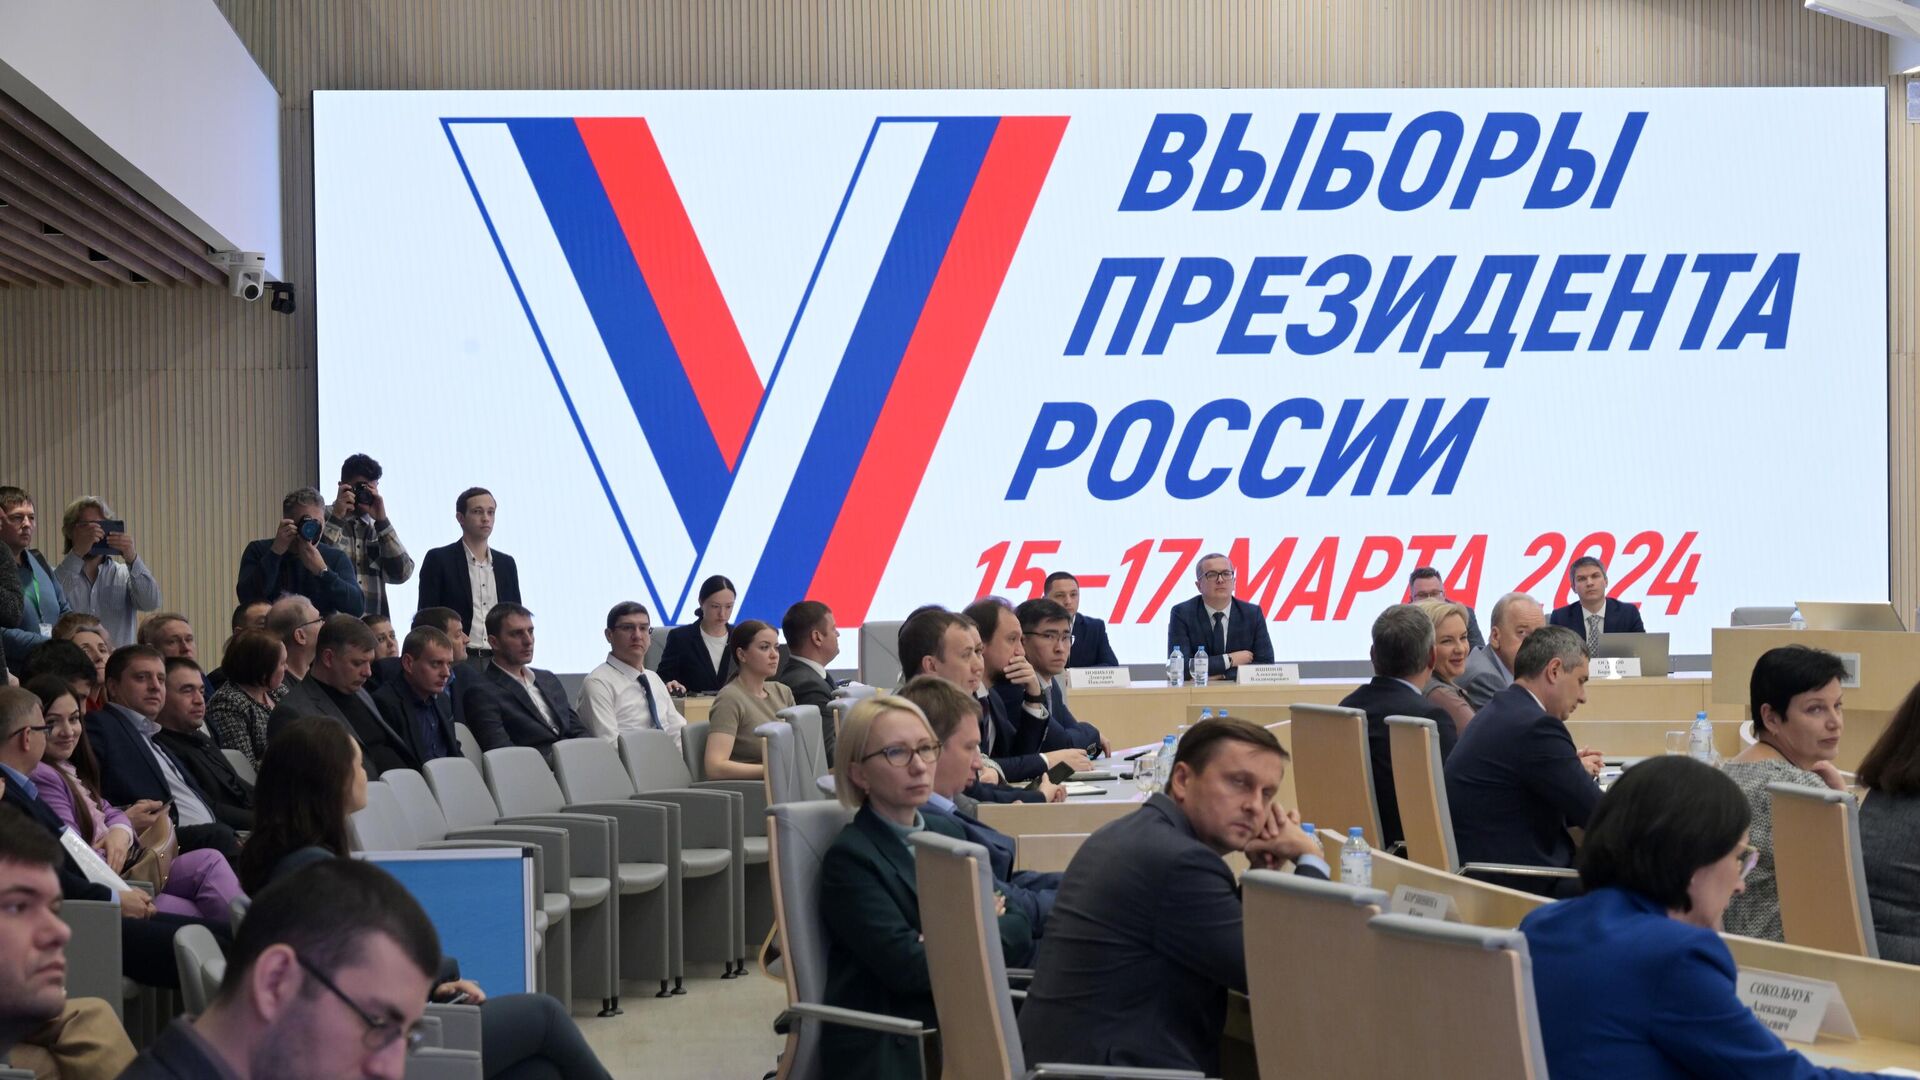 Харитонов: предвыборные дебаты на телевидении начнутся 16 февраля